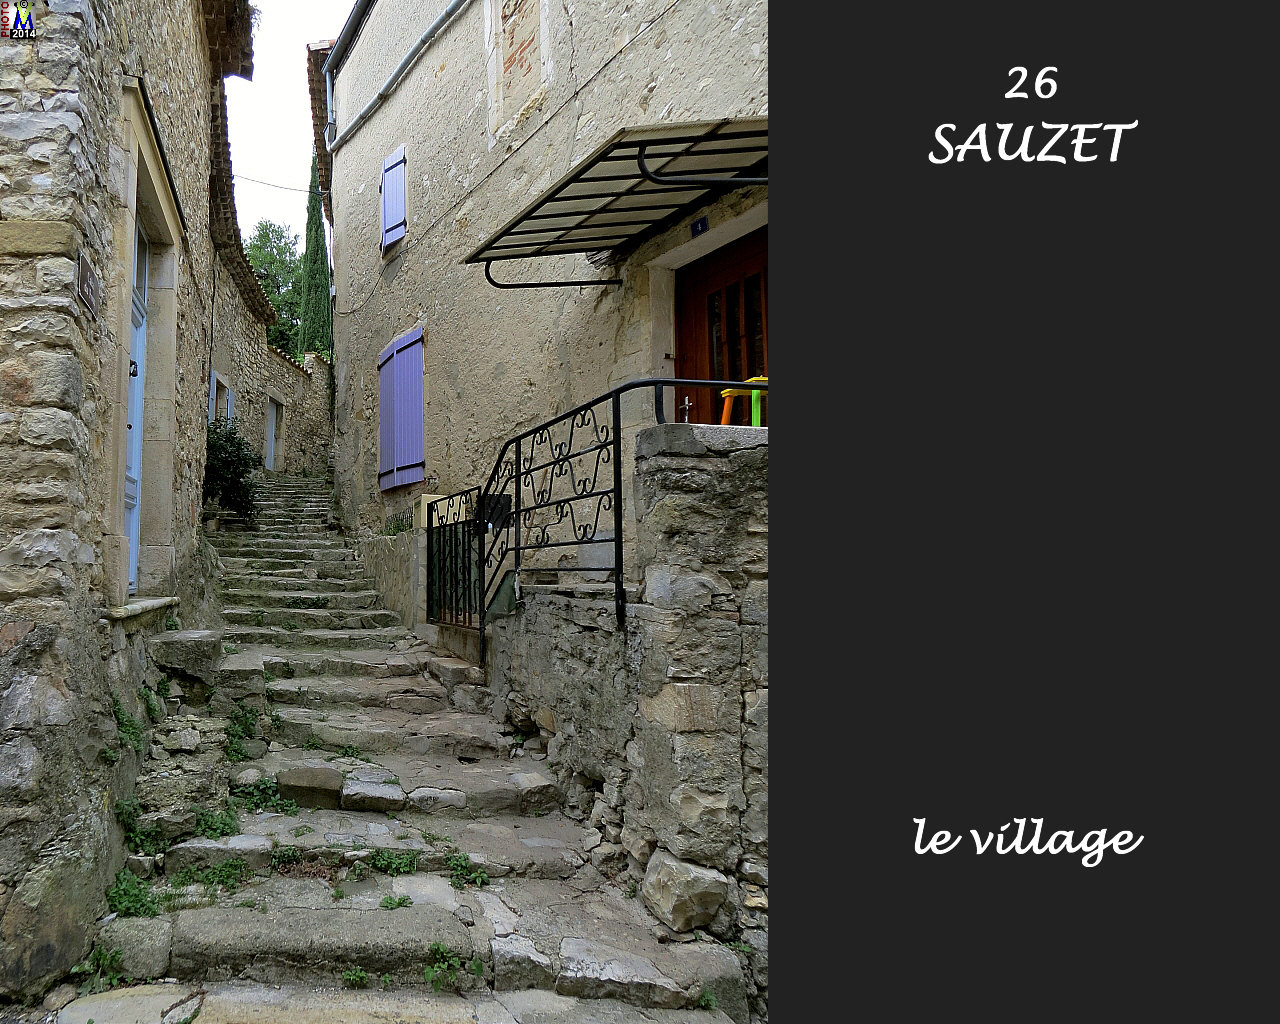 26SAUZET_village_108.jpg